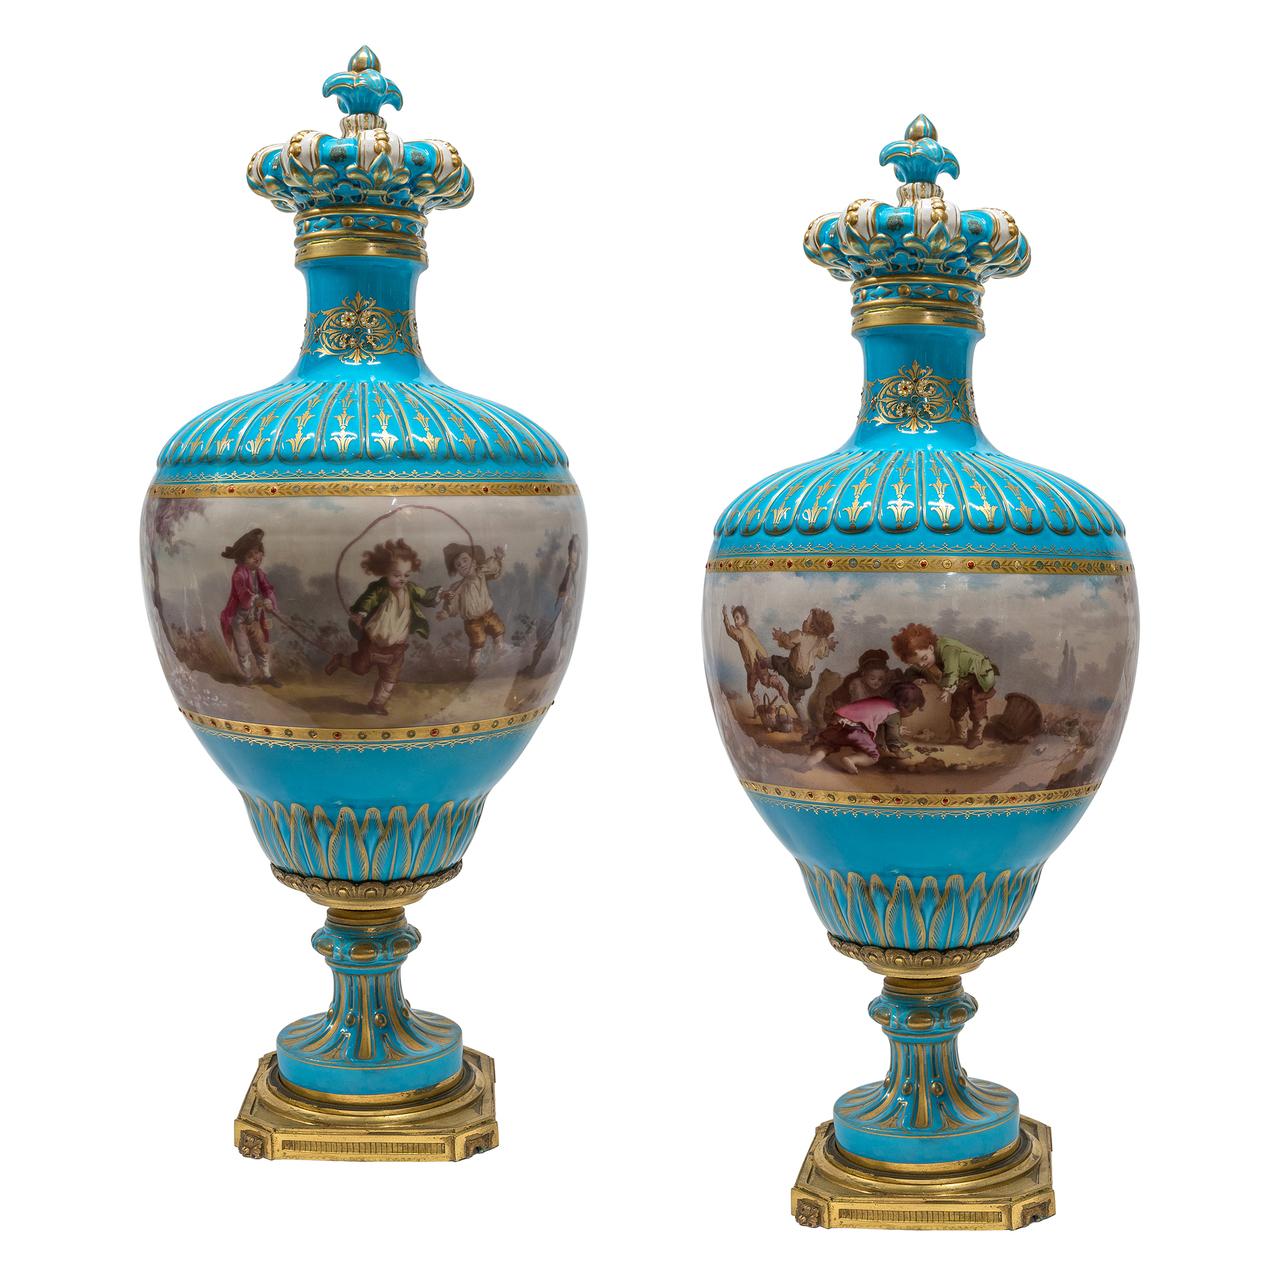 Pendule en bronze doré et turquoise de style Sèvres, ornée de joyaux en porcelaine. L'horloge est surmontée d'une urne couverte et flanquée de masques de lion de chaque côté, en suite avec une paire de vases et de couvercles en porcelaine turquoise